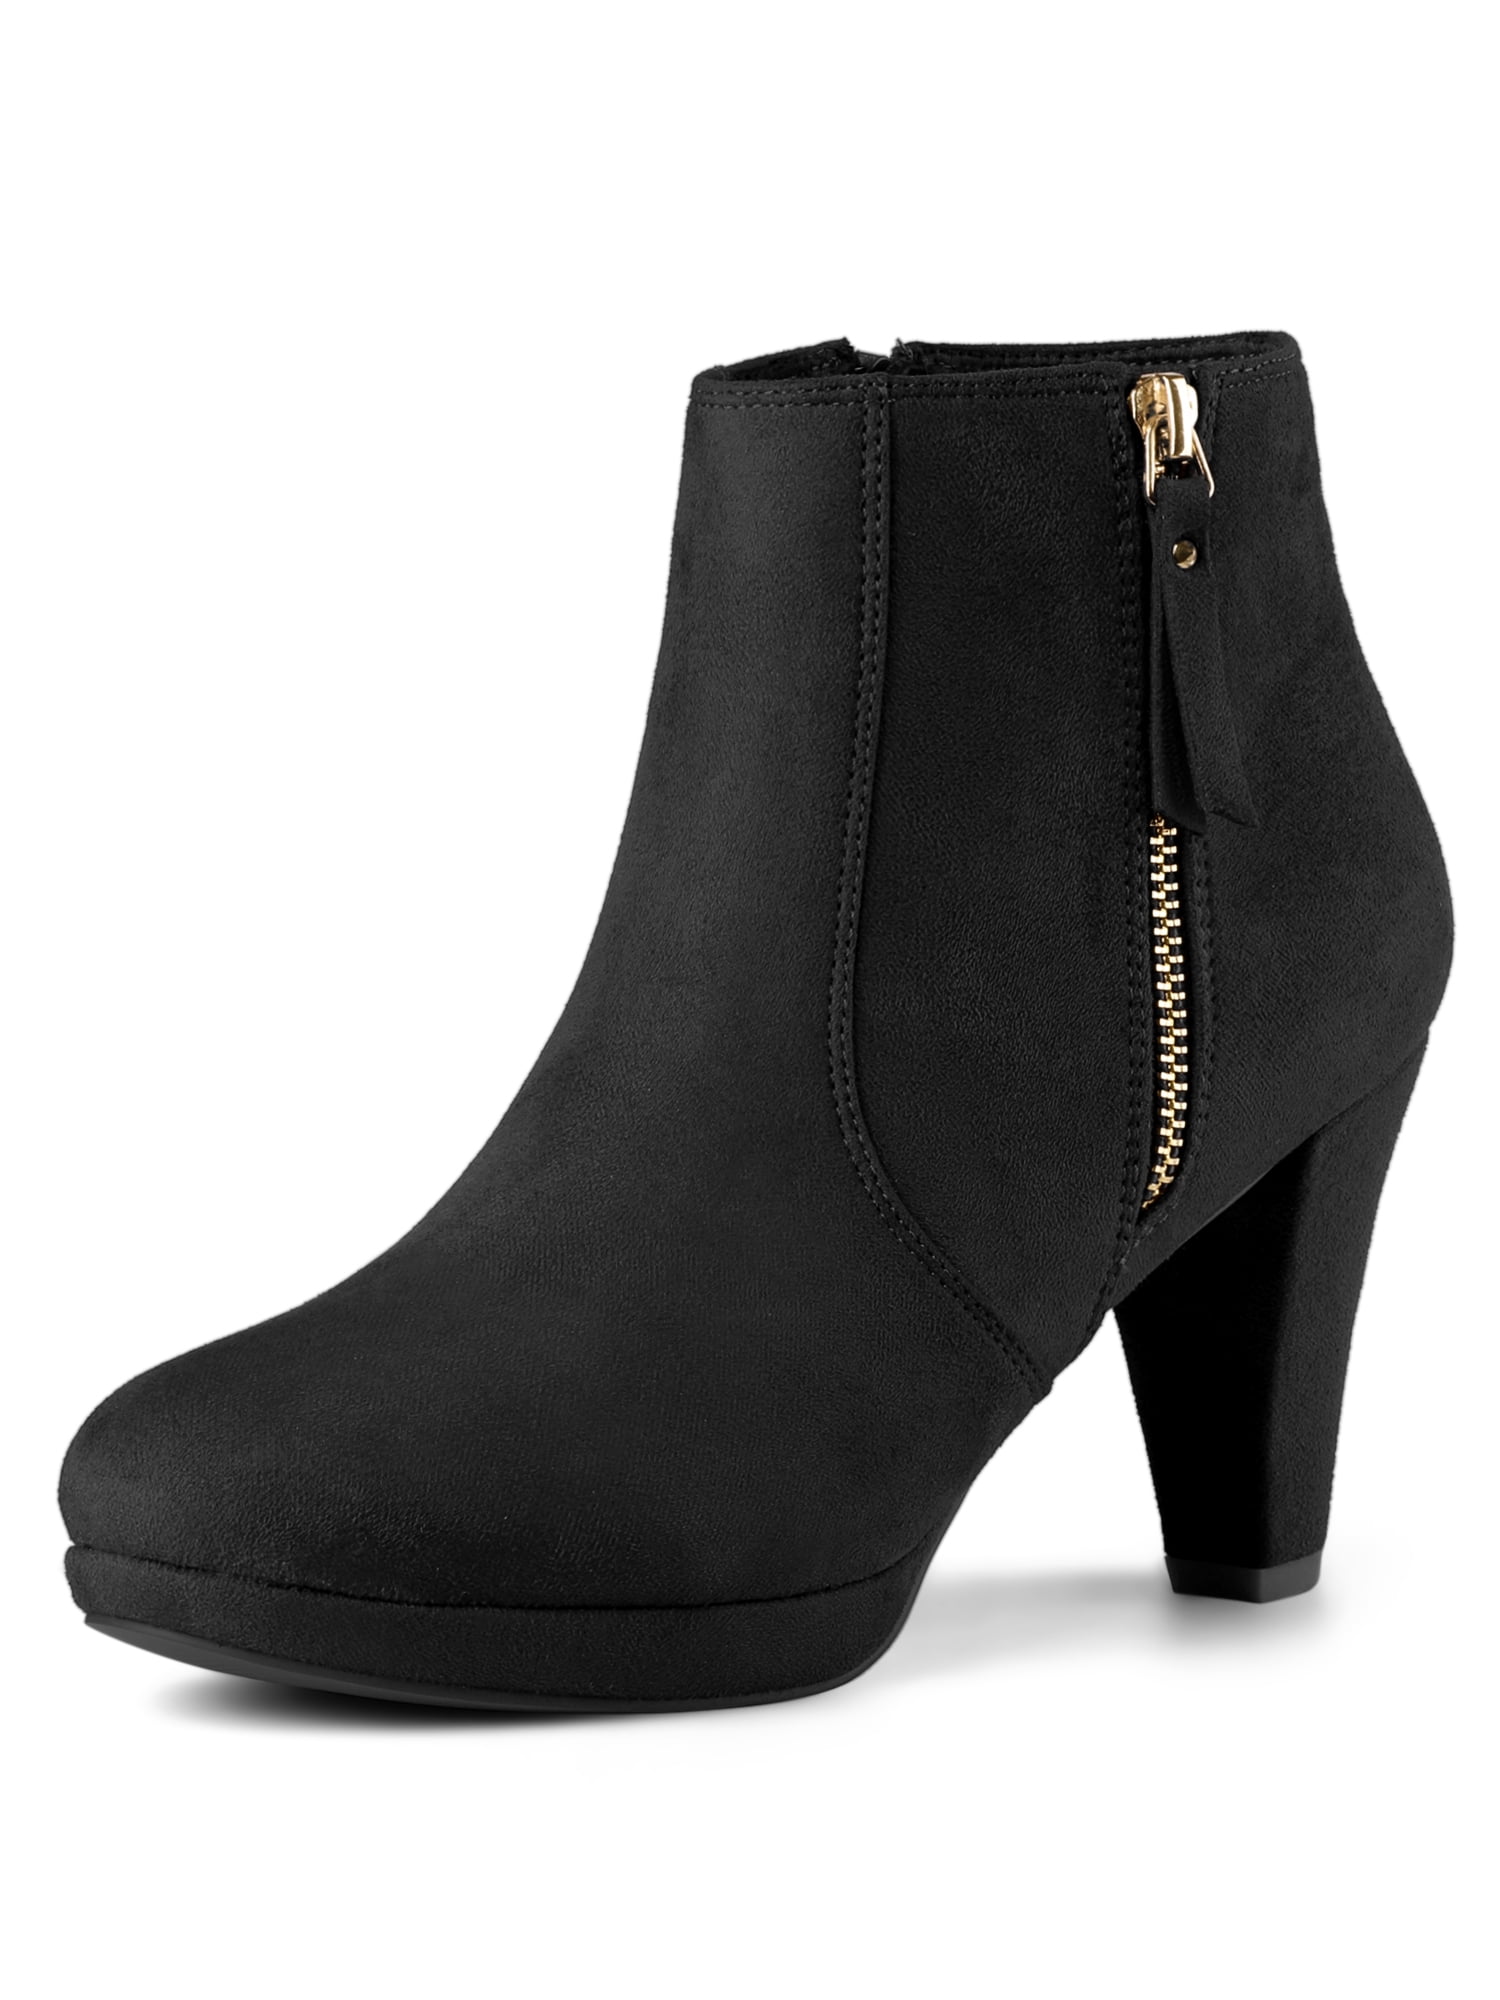 women-s-side-zip-low-platform-block-heel-ankle-booties-black-size-6-5